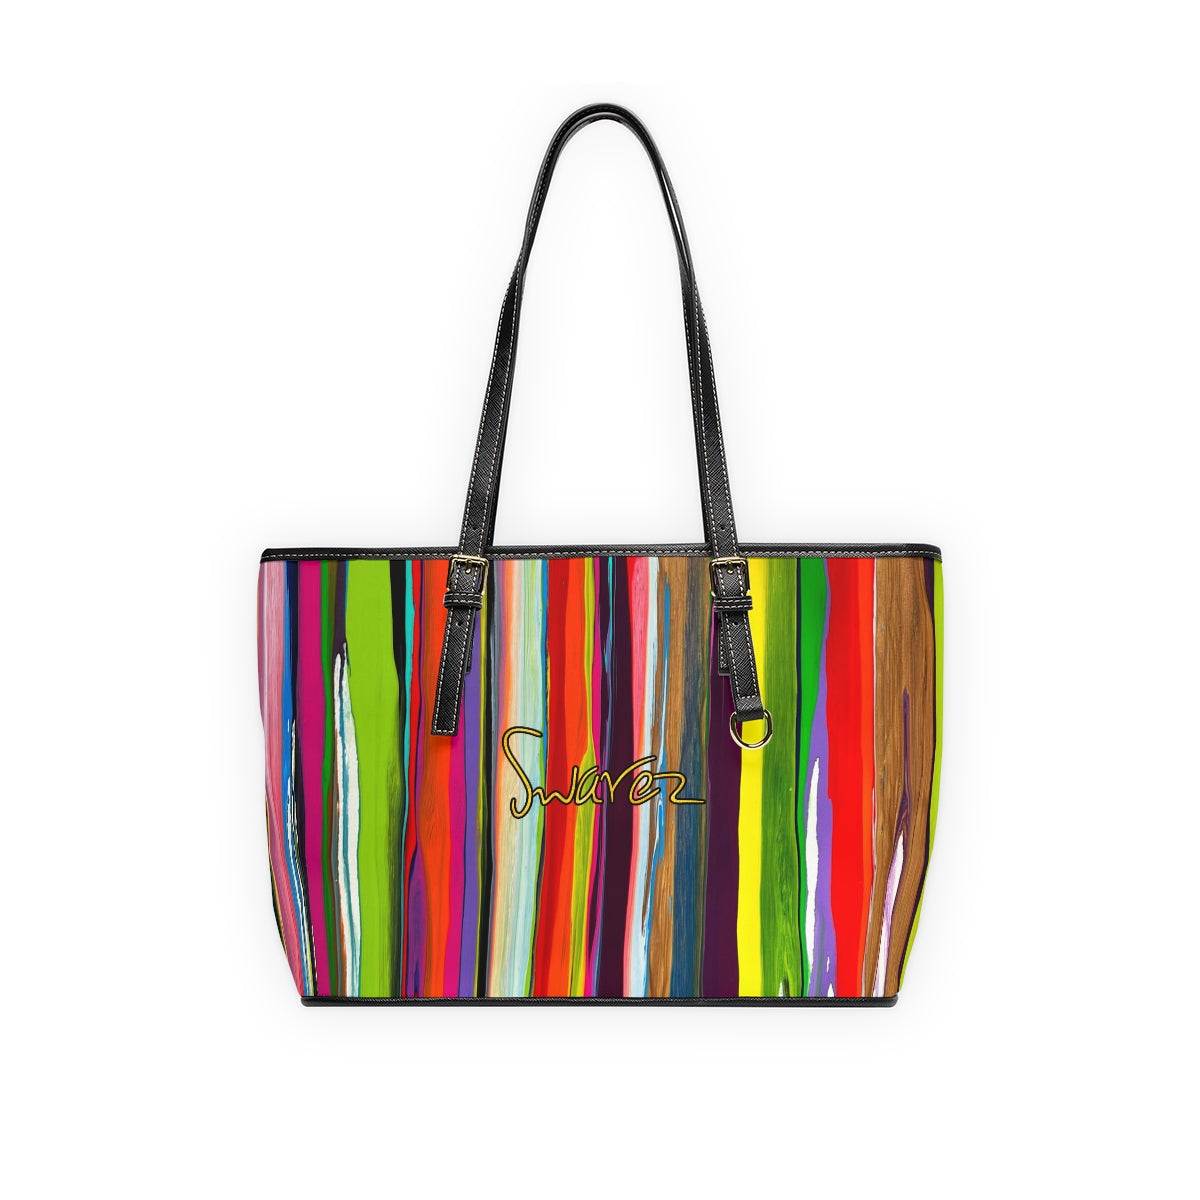 PU Leather Shoulder Bag - Vertical stripes design